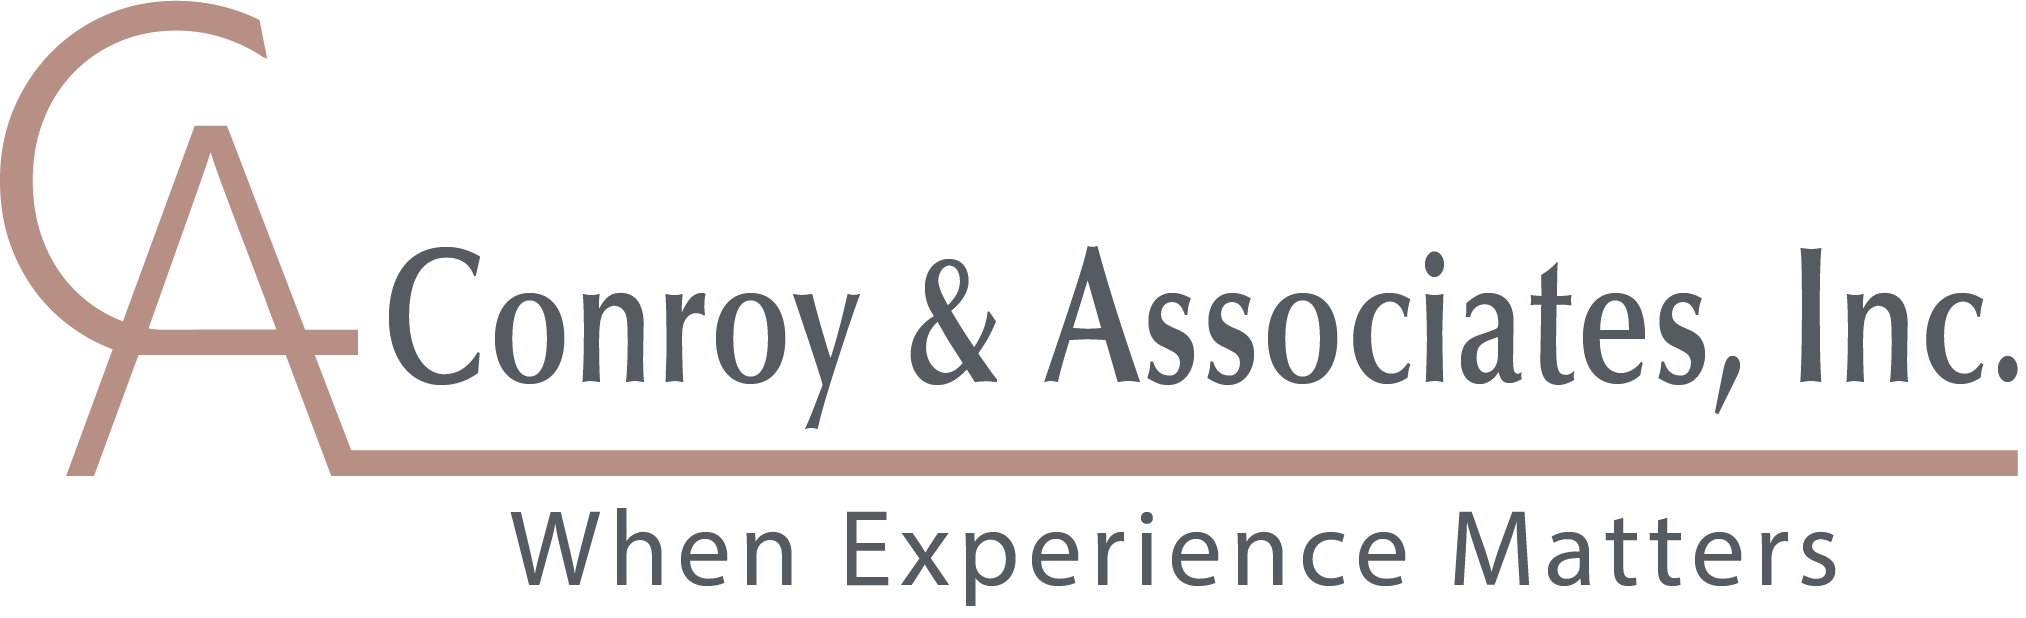 logo Conroy _ Associates_ Inc with motto